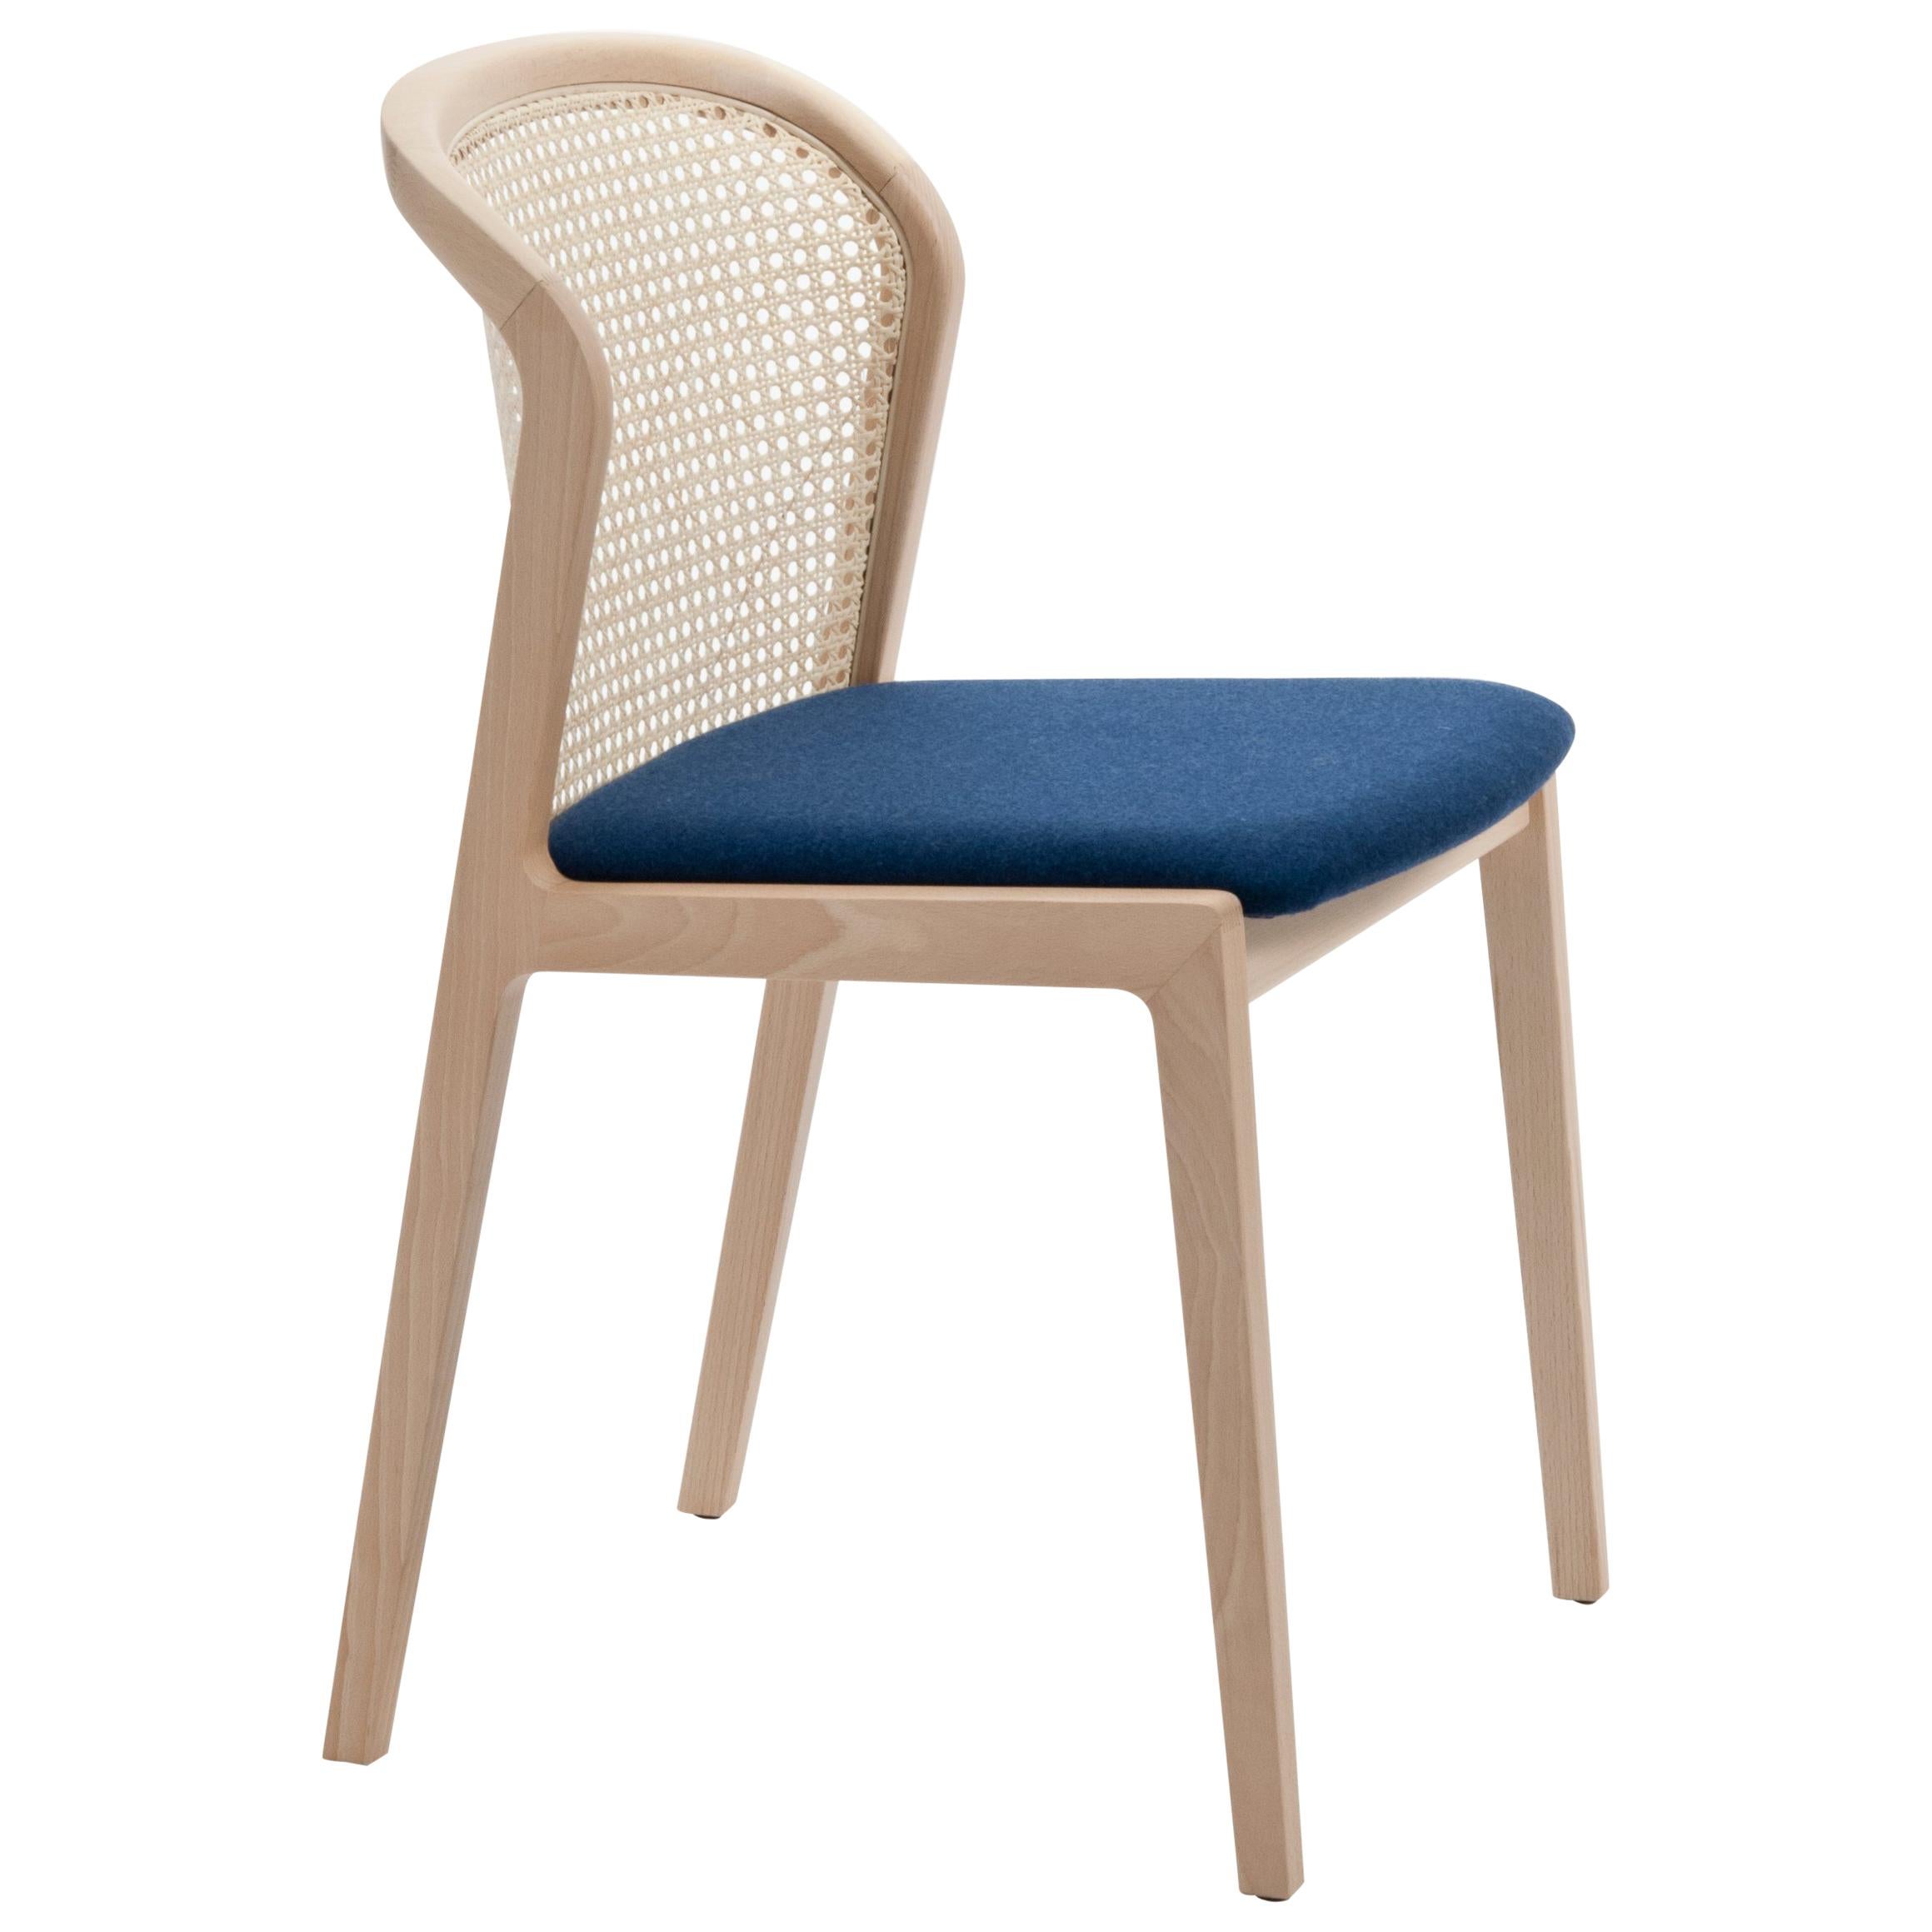 Chaise Vienna de Col, design moderne en bois et paille, assise tapissée bleue